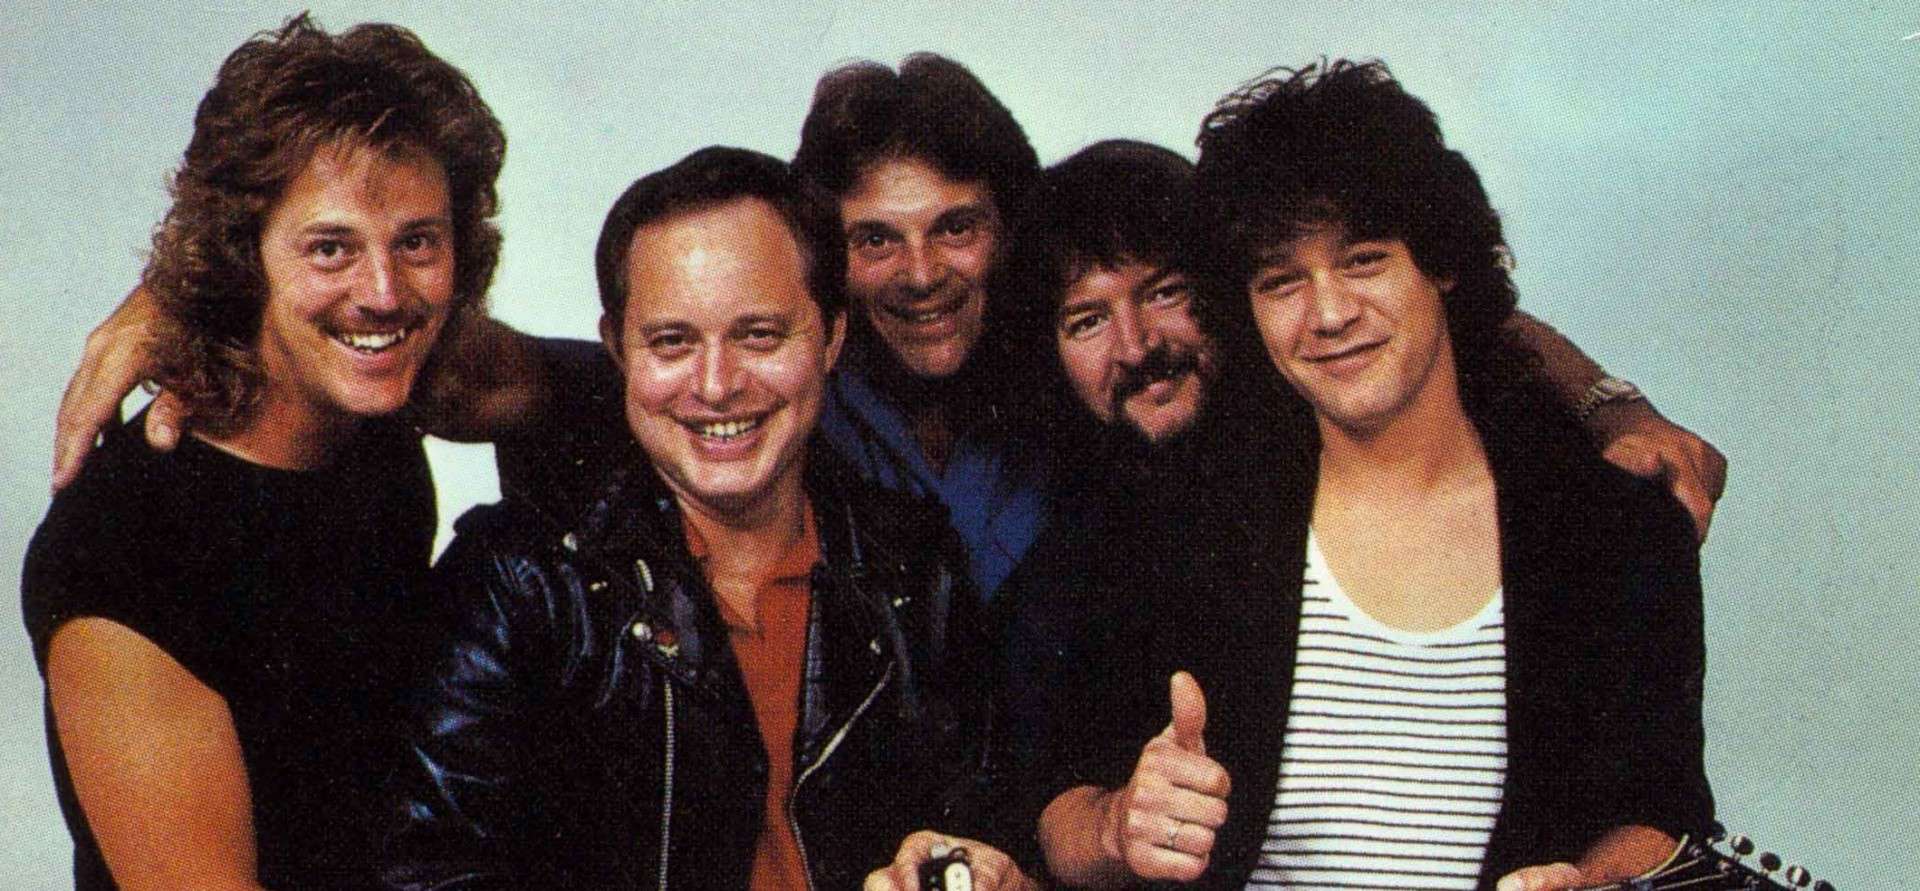 A photo of Floyd Rose, Steve Ripley, Dennis Berardi, Seymour W Duncan, and Eddie Van Halen.